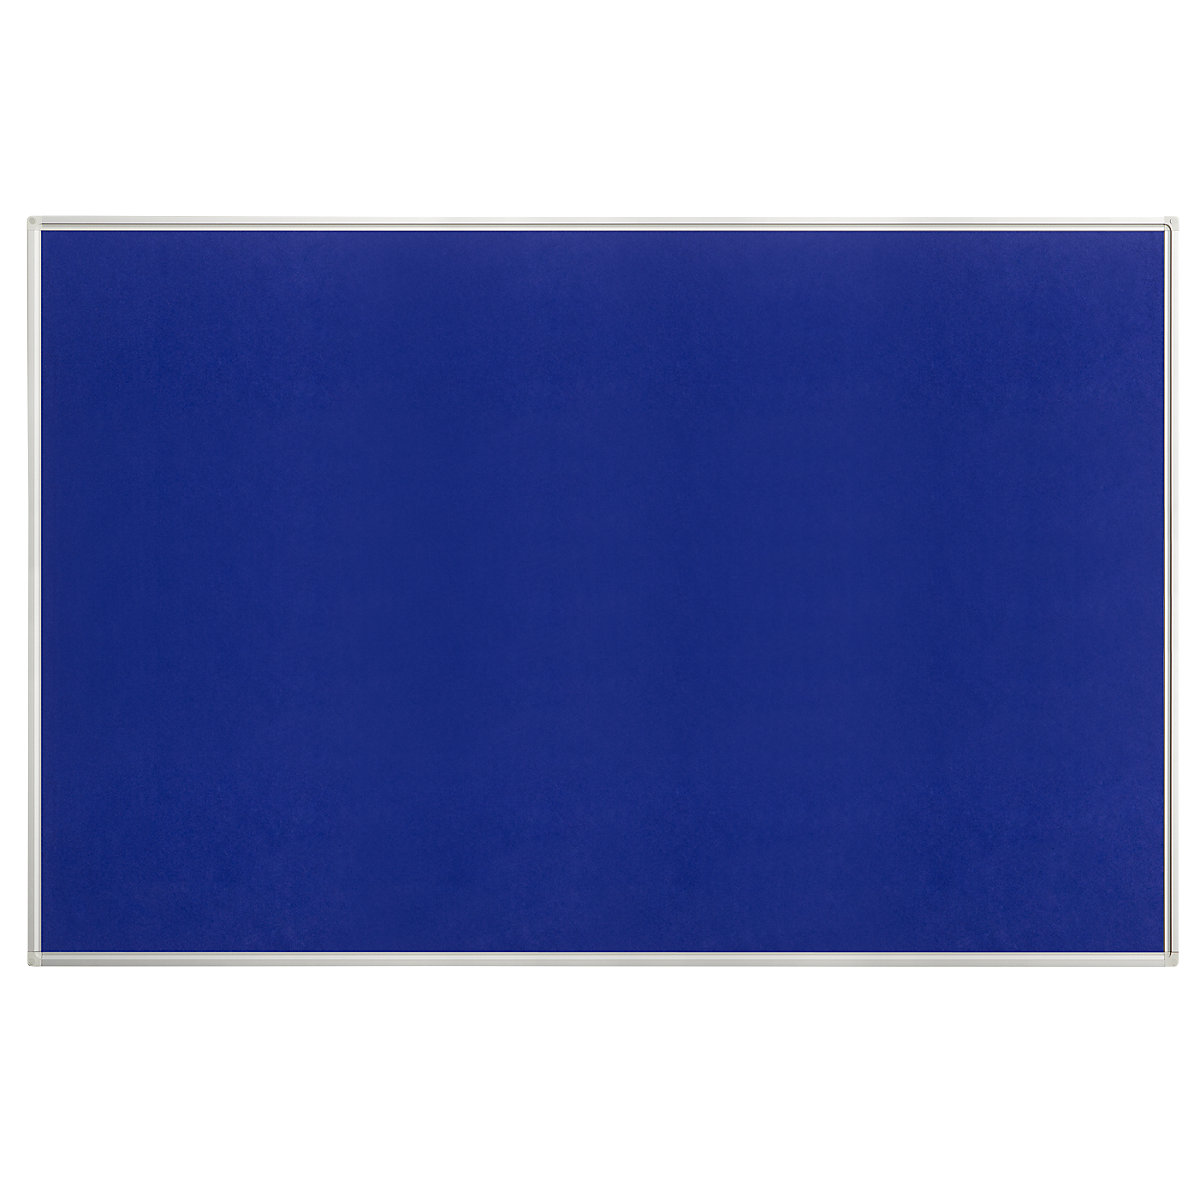 Oglasna ploča, filc, u plavoj boji, ŠxV 1500 x 1000 mm-5